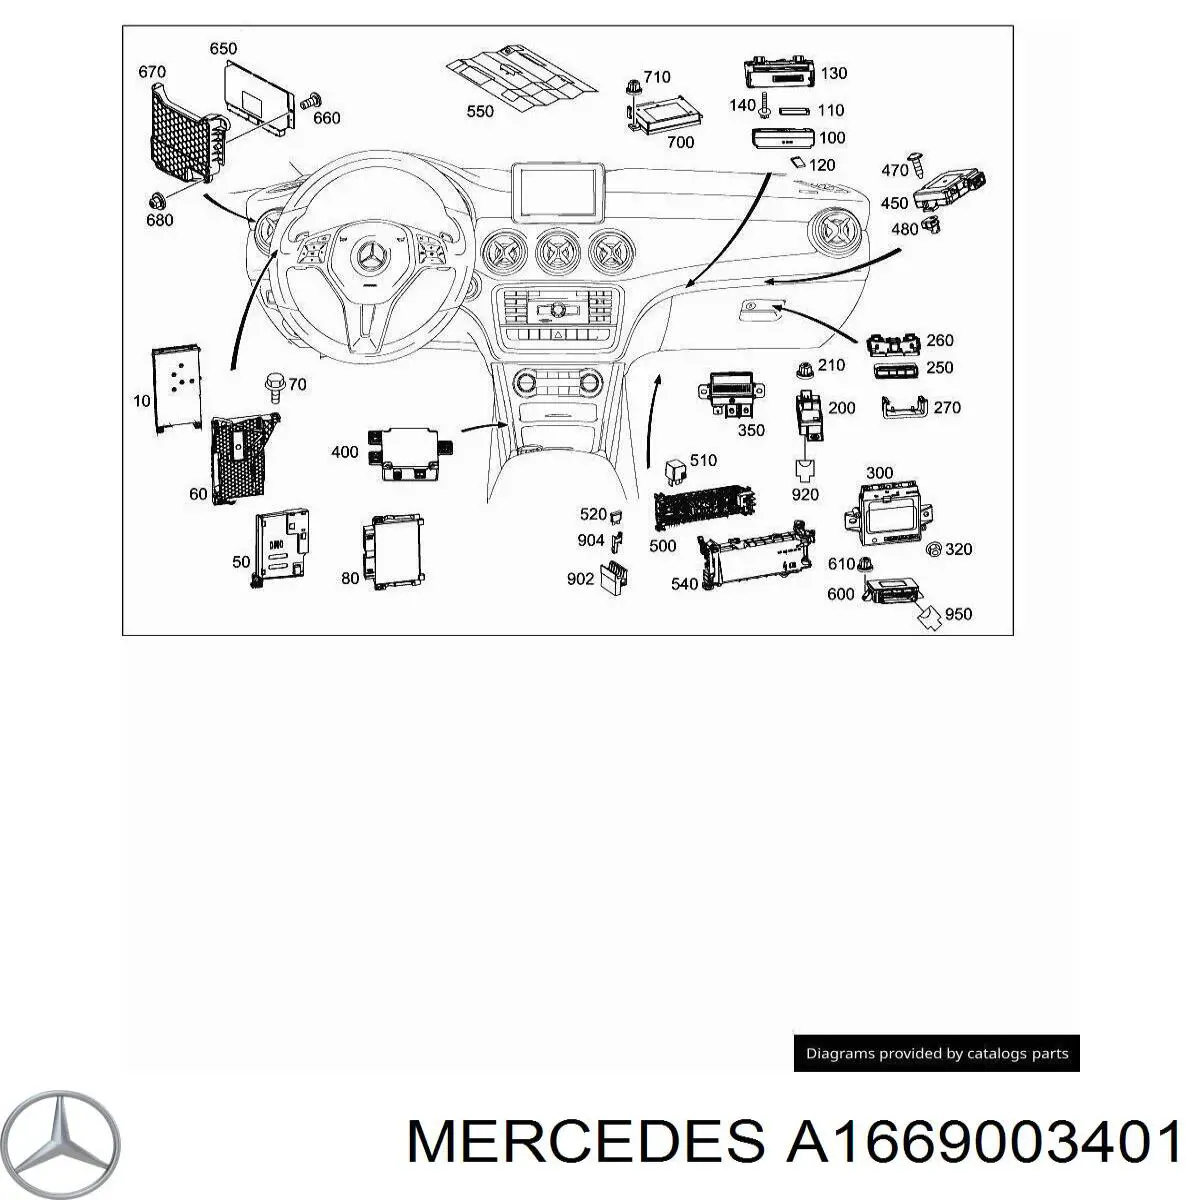 A1669003401 Mercedes modulo de control de faros (ecu)